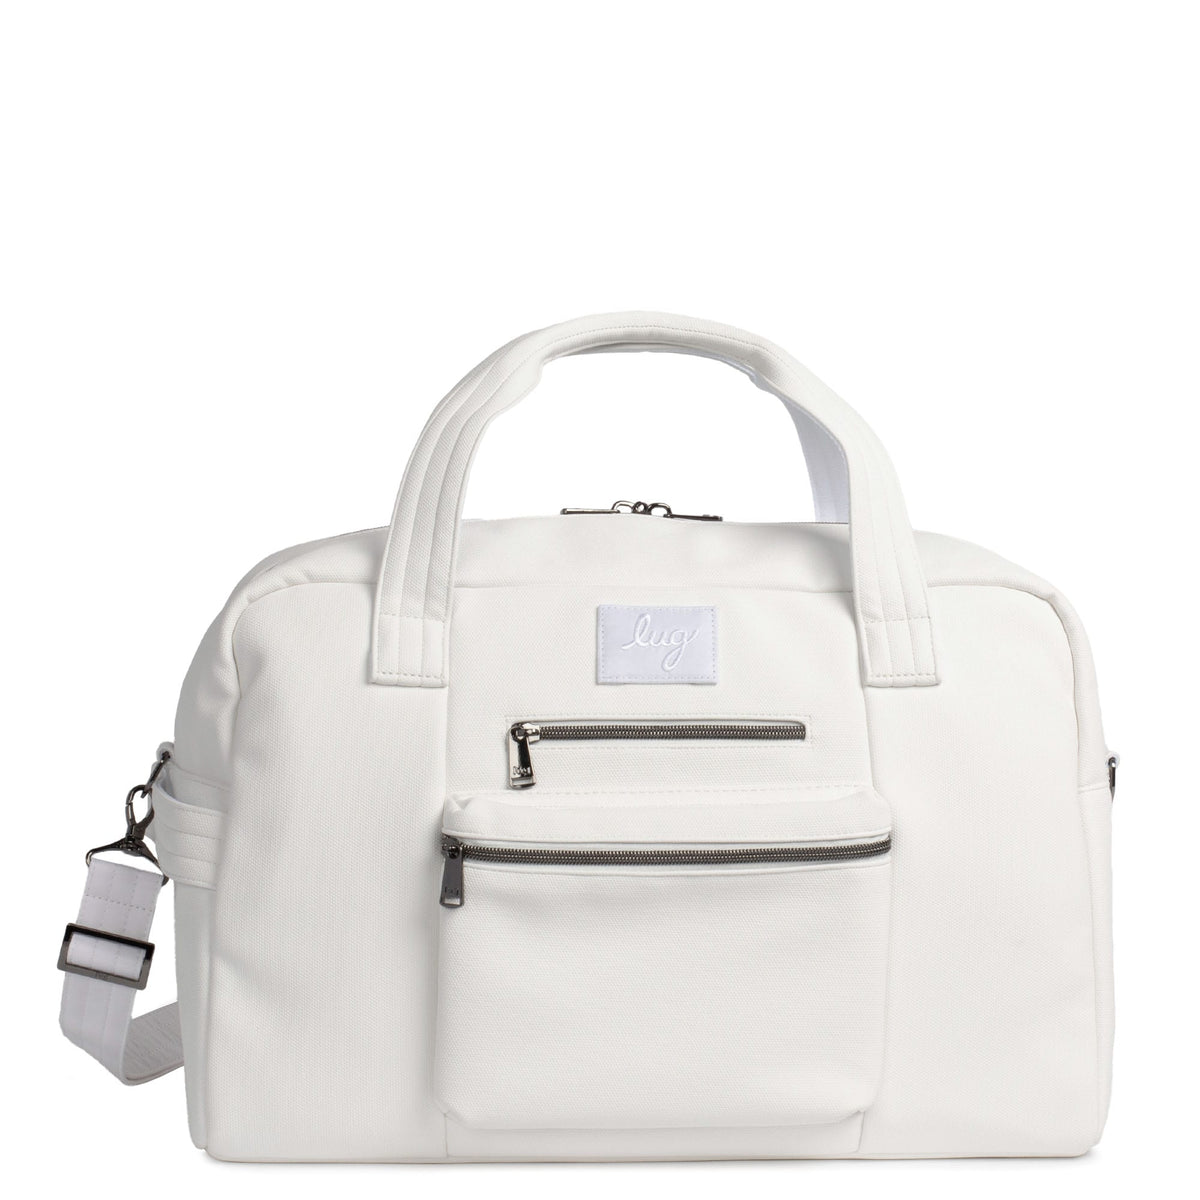 Tote bag | Handbag essentials, Purse essentials, Inside my bag